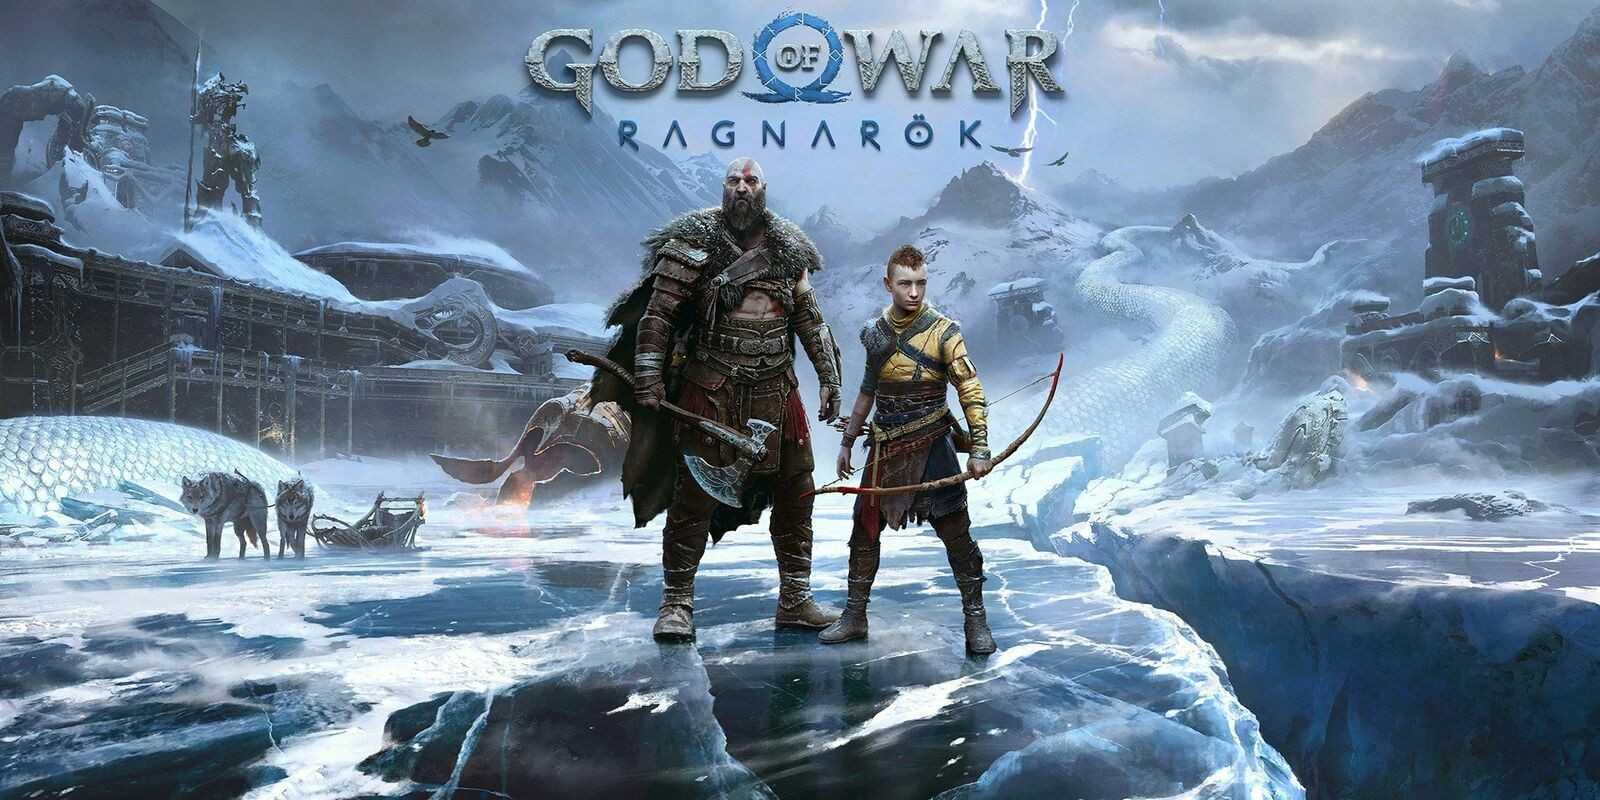 เงินเดือนของนักแสดง Kratos Christopher Judge อาจทำให้แฟน ๆ ไม่พอใจแม้ว่า God of War: Ragnarok จะขายได้มากกว่า 11 ล้านเล่มทั่วโลก